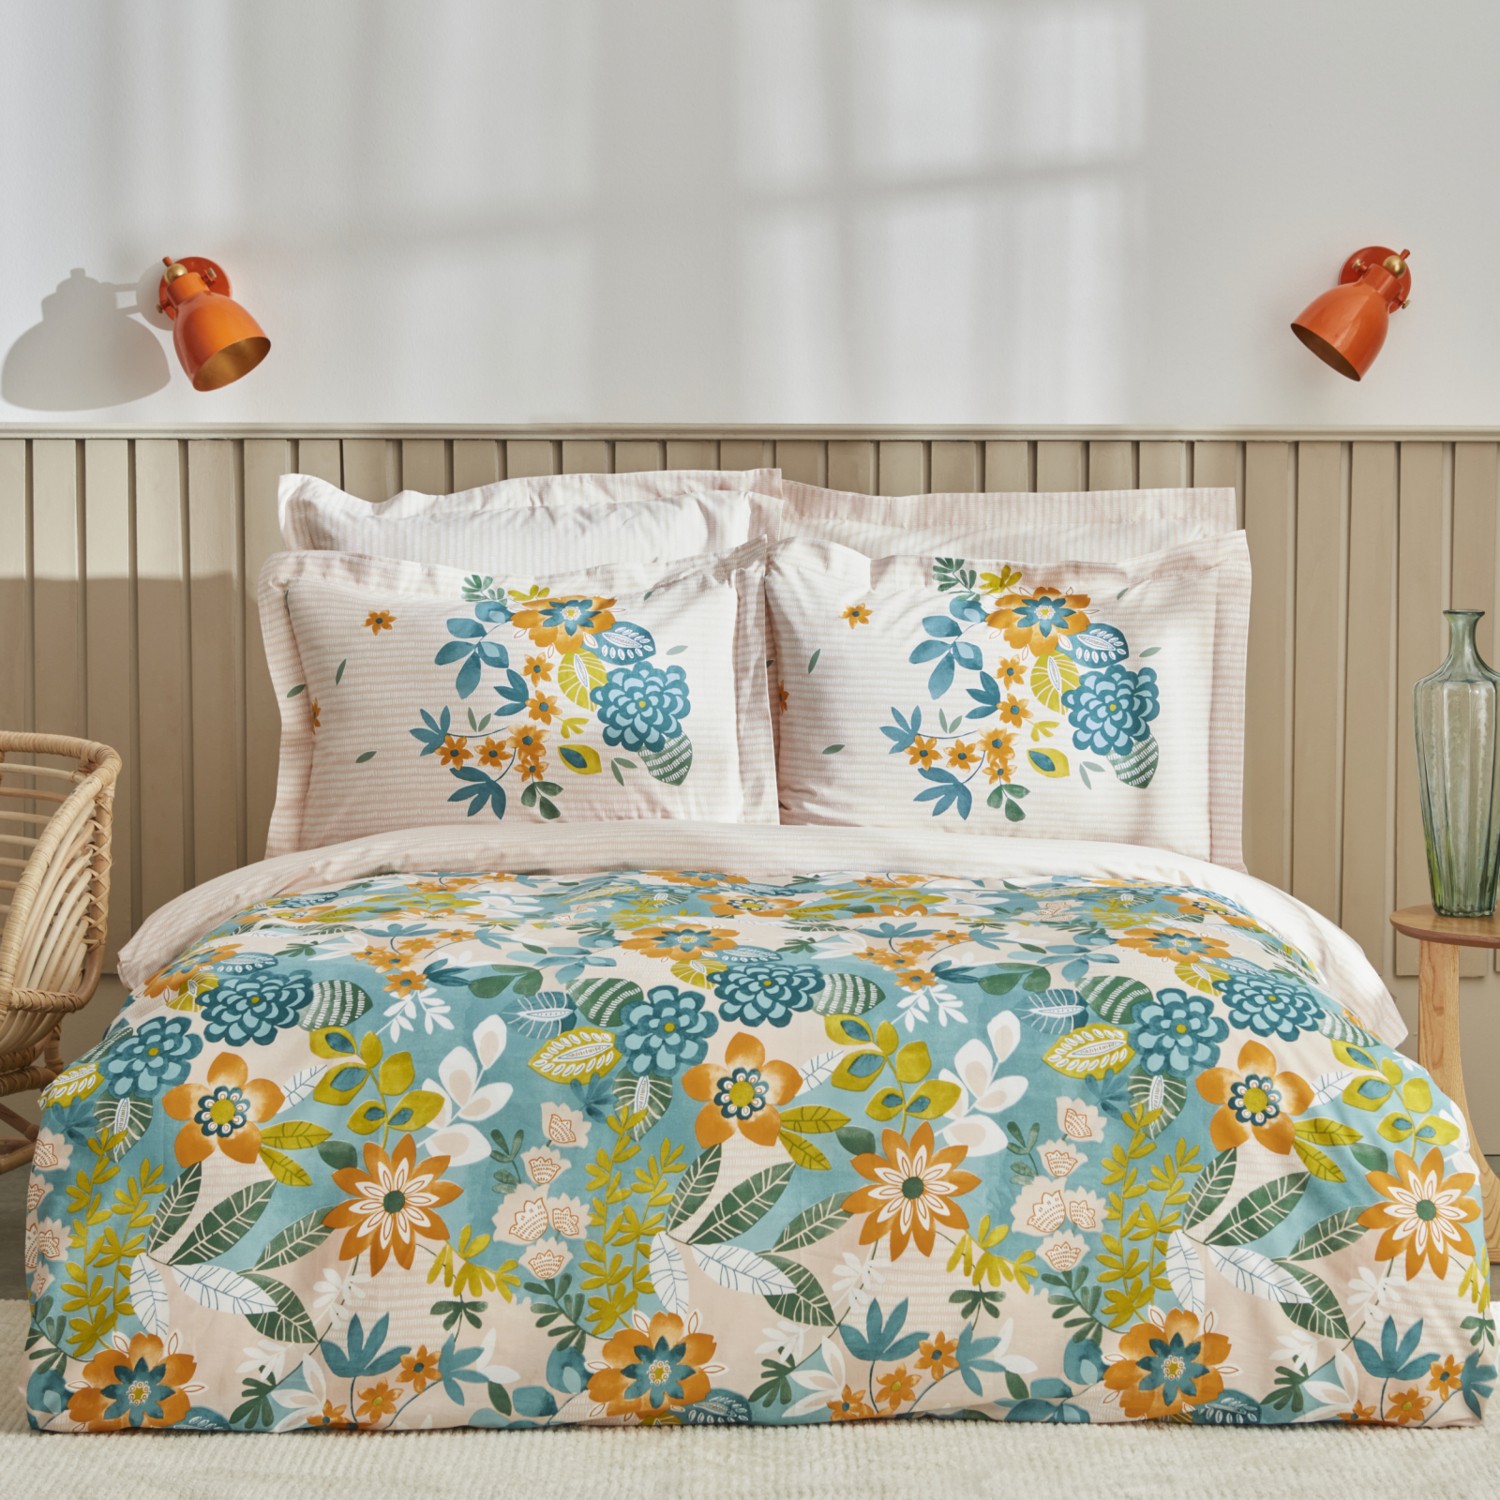 комплект постельного белья с вышивкой karaca home Комплект постельного белья Karaca Home Botanical, зеленый